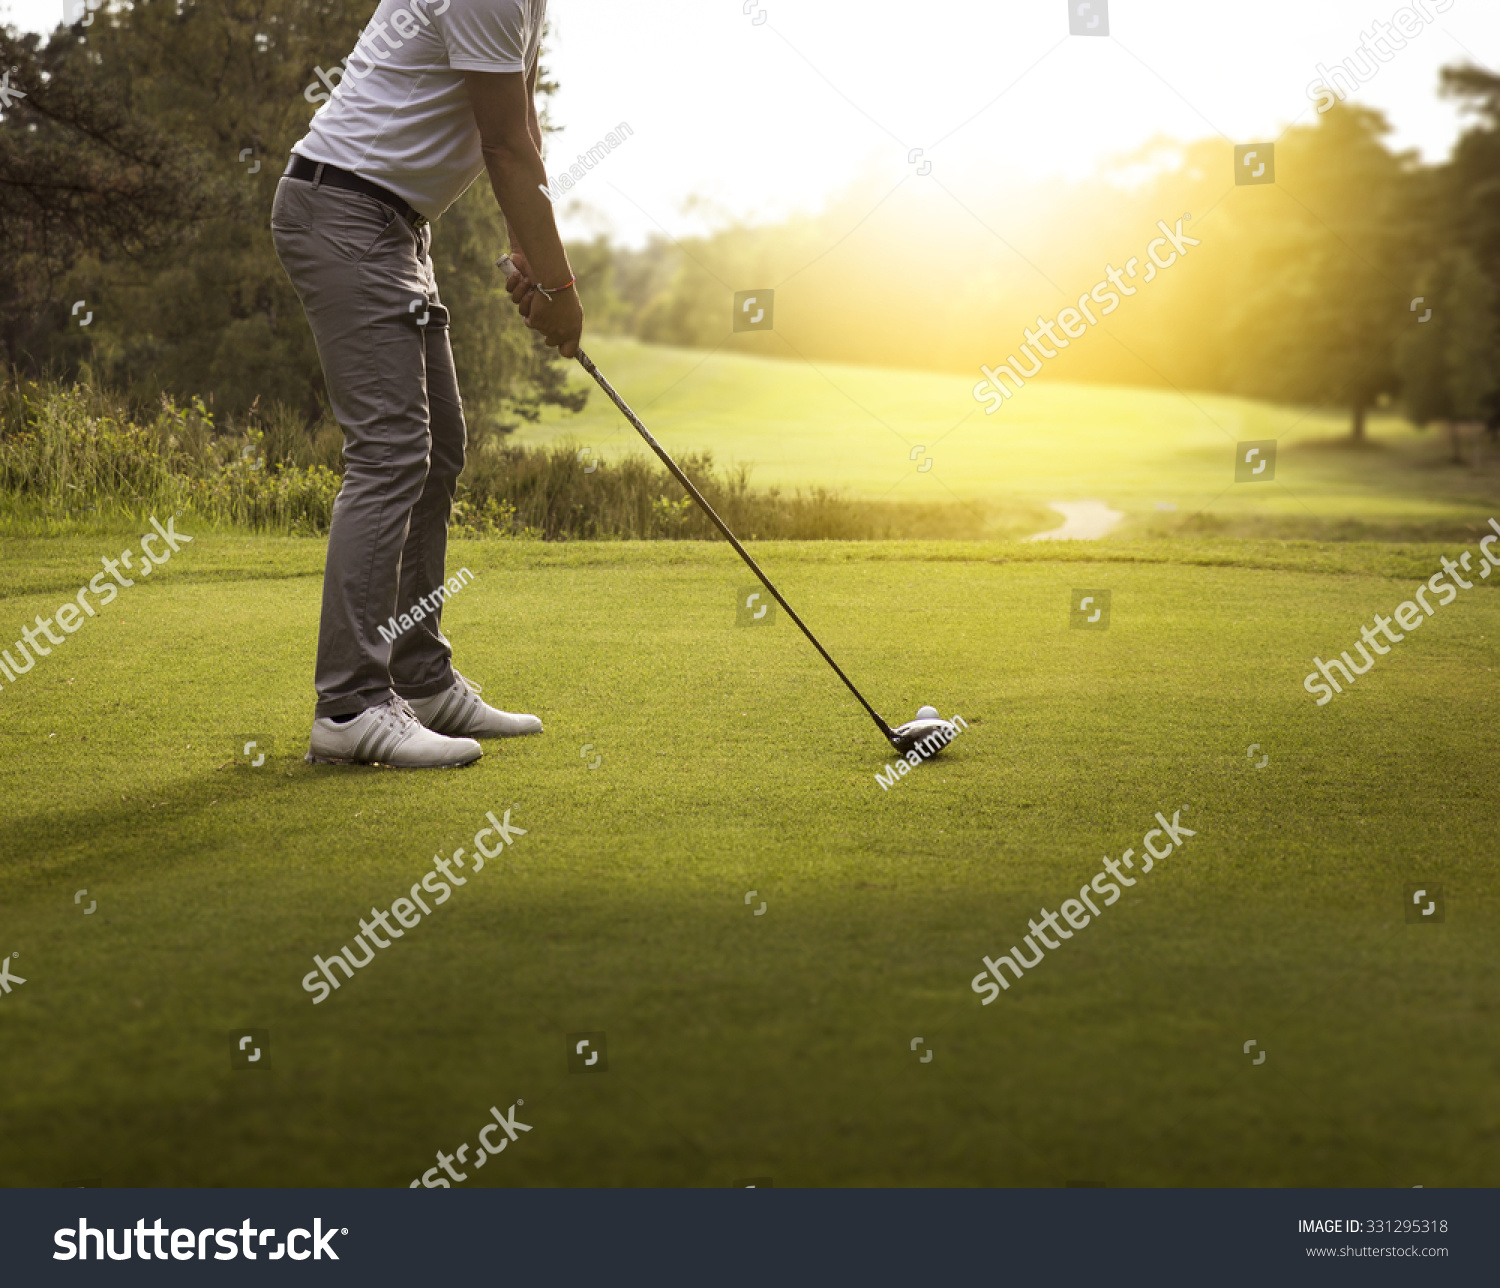 Man playing golf #331295318